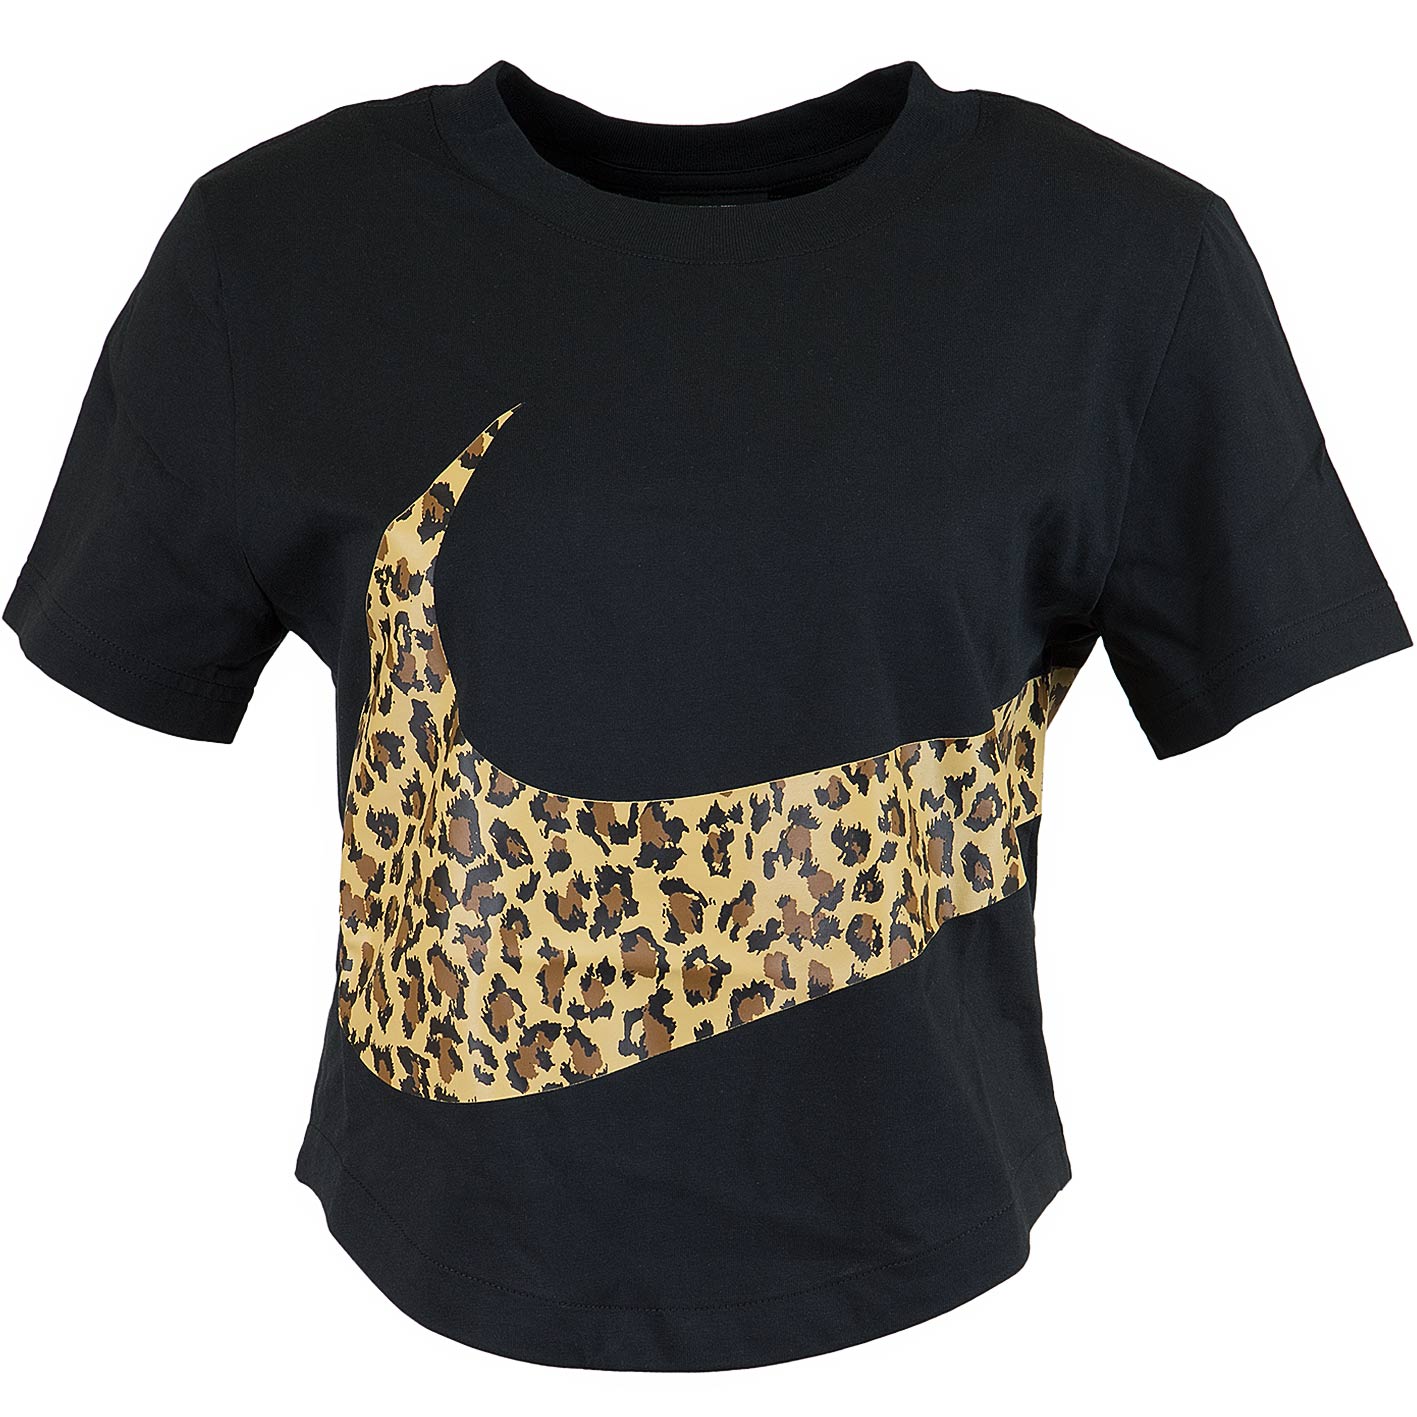 ☆ Nike Damen T-Shirt Crop Animal schwarz - hier bestellen!